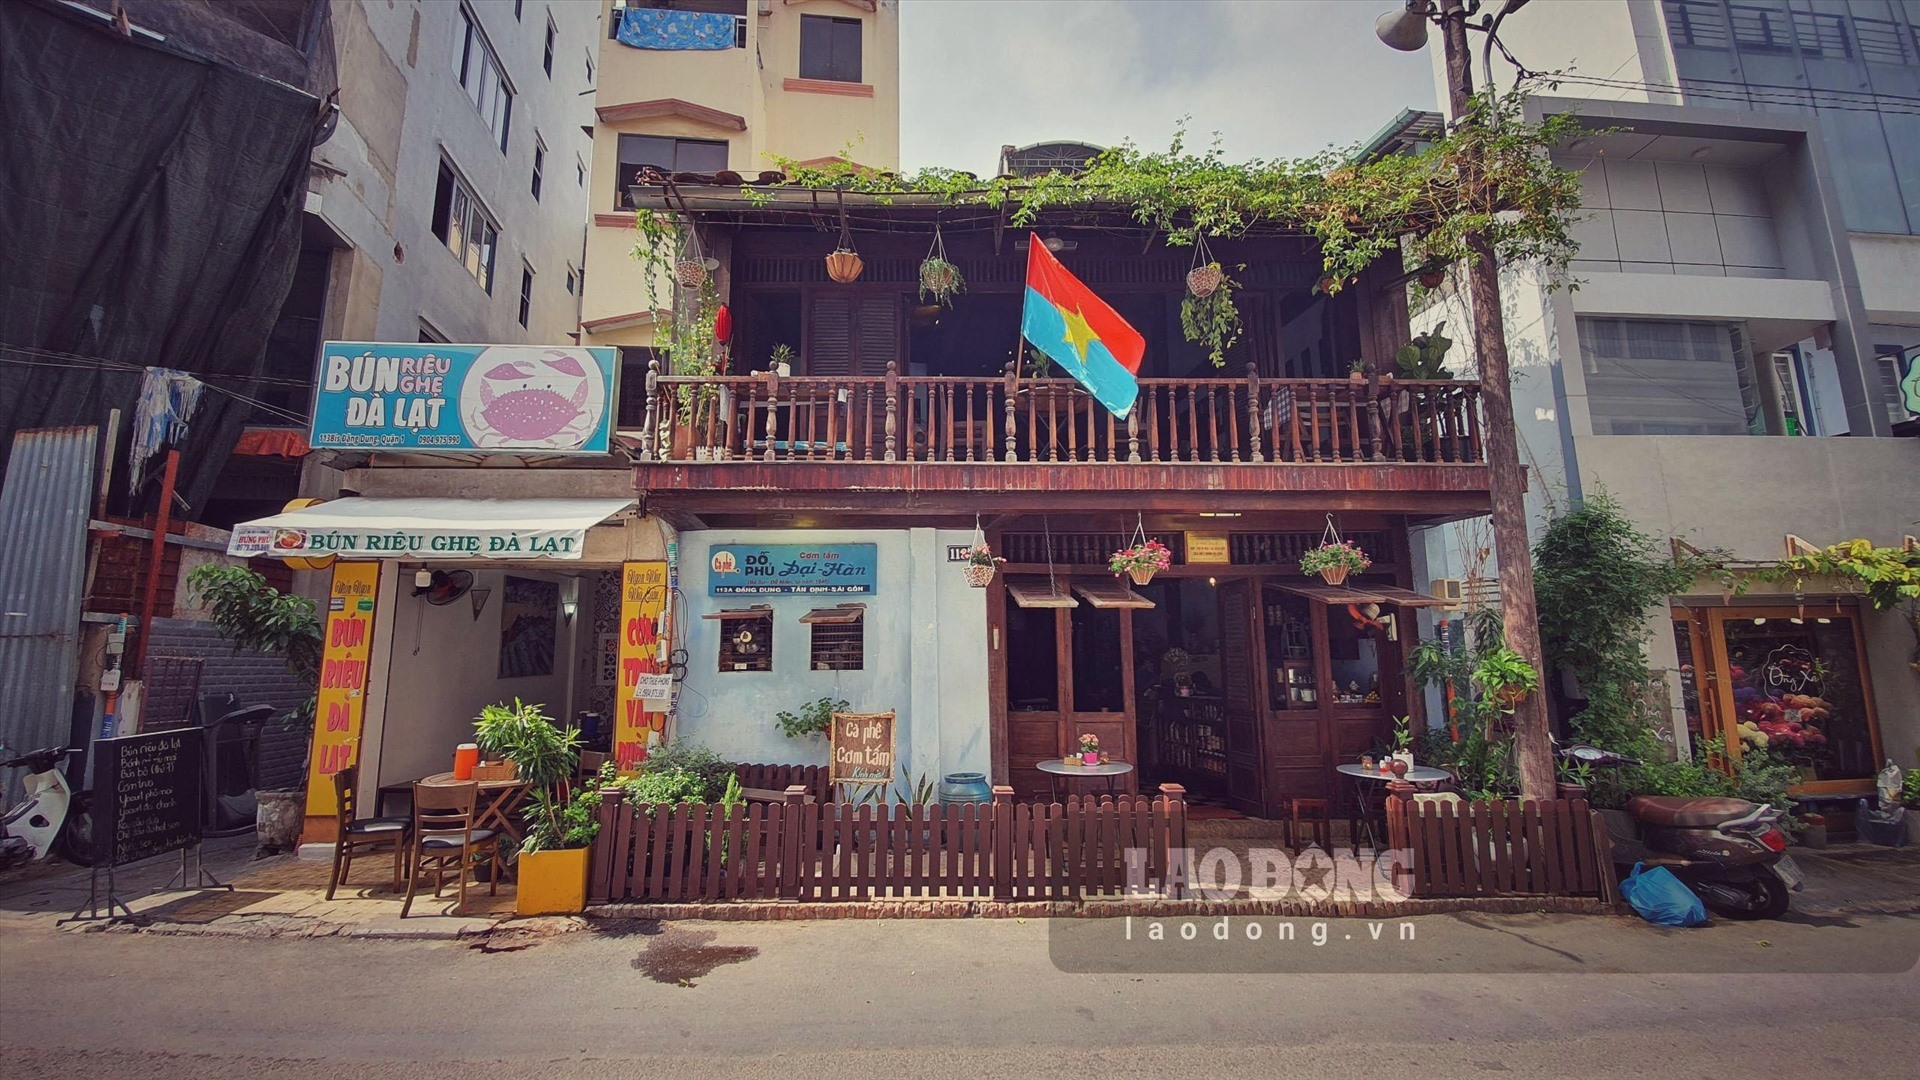 Quán cafe Đỗ Phủ - cơm tấm Đại Hàn nằm tại căn nhà ở số 113A Đặng Dung, phường Tân Định, quận 1, TP.HCM, nơi đây từng là di tích lịch sử Hộp thư bí mật và hầm nổi của Biệt động Sài Gòn